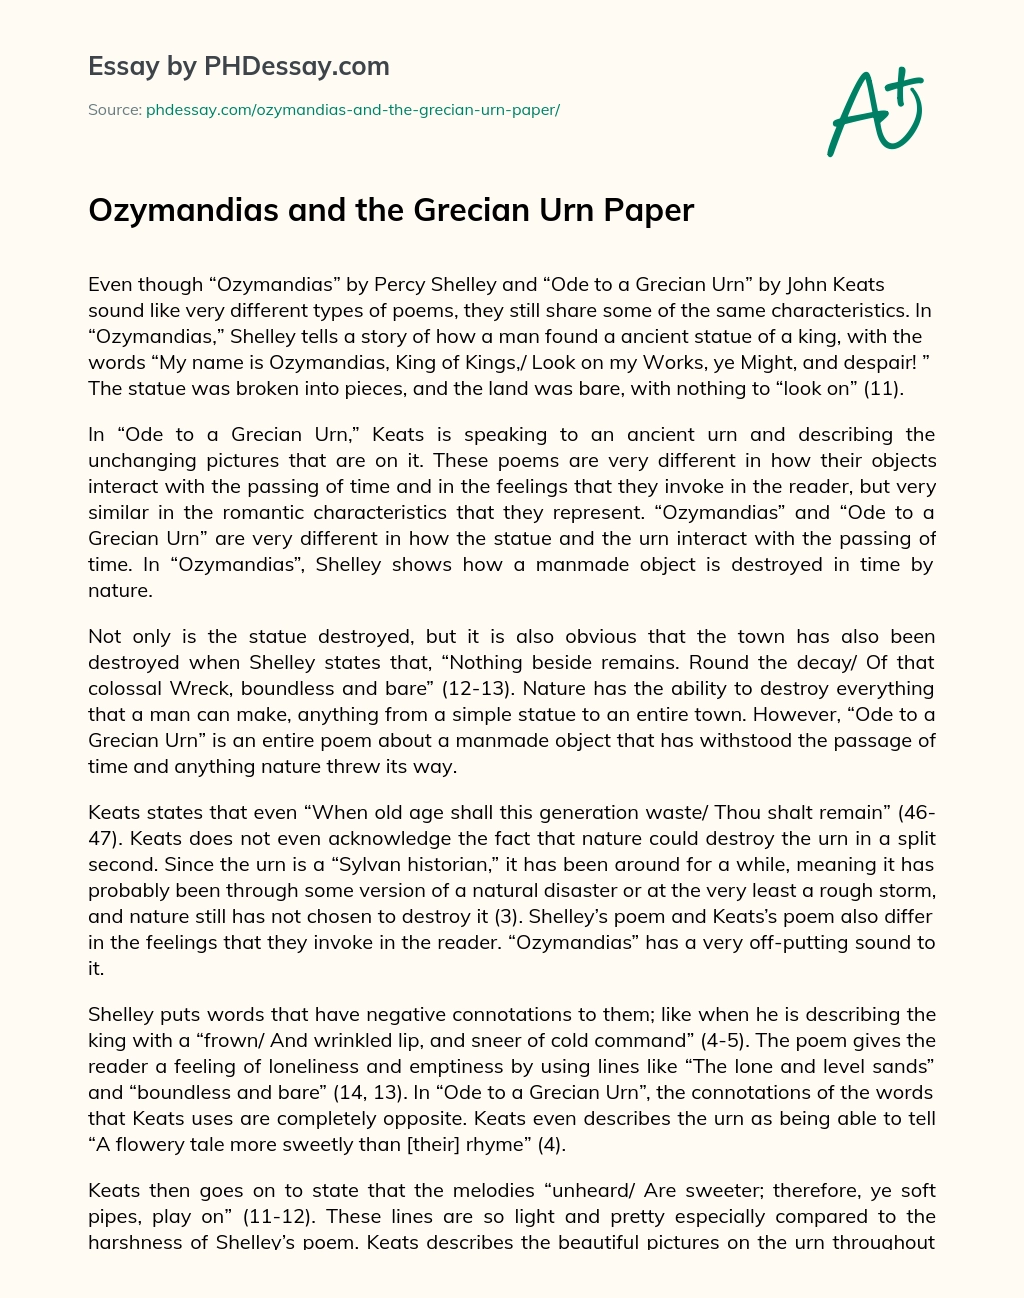 Ozymandias and the Grecian Urn Paper essay